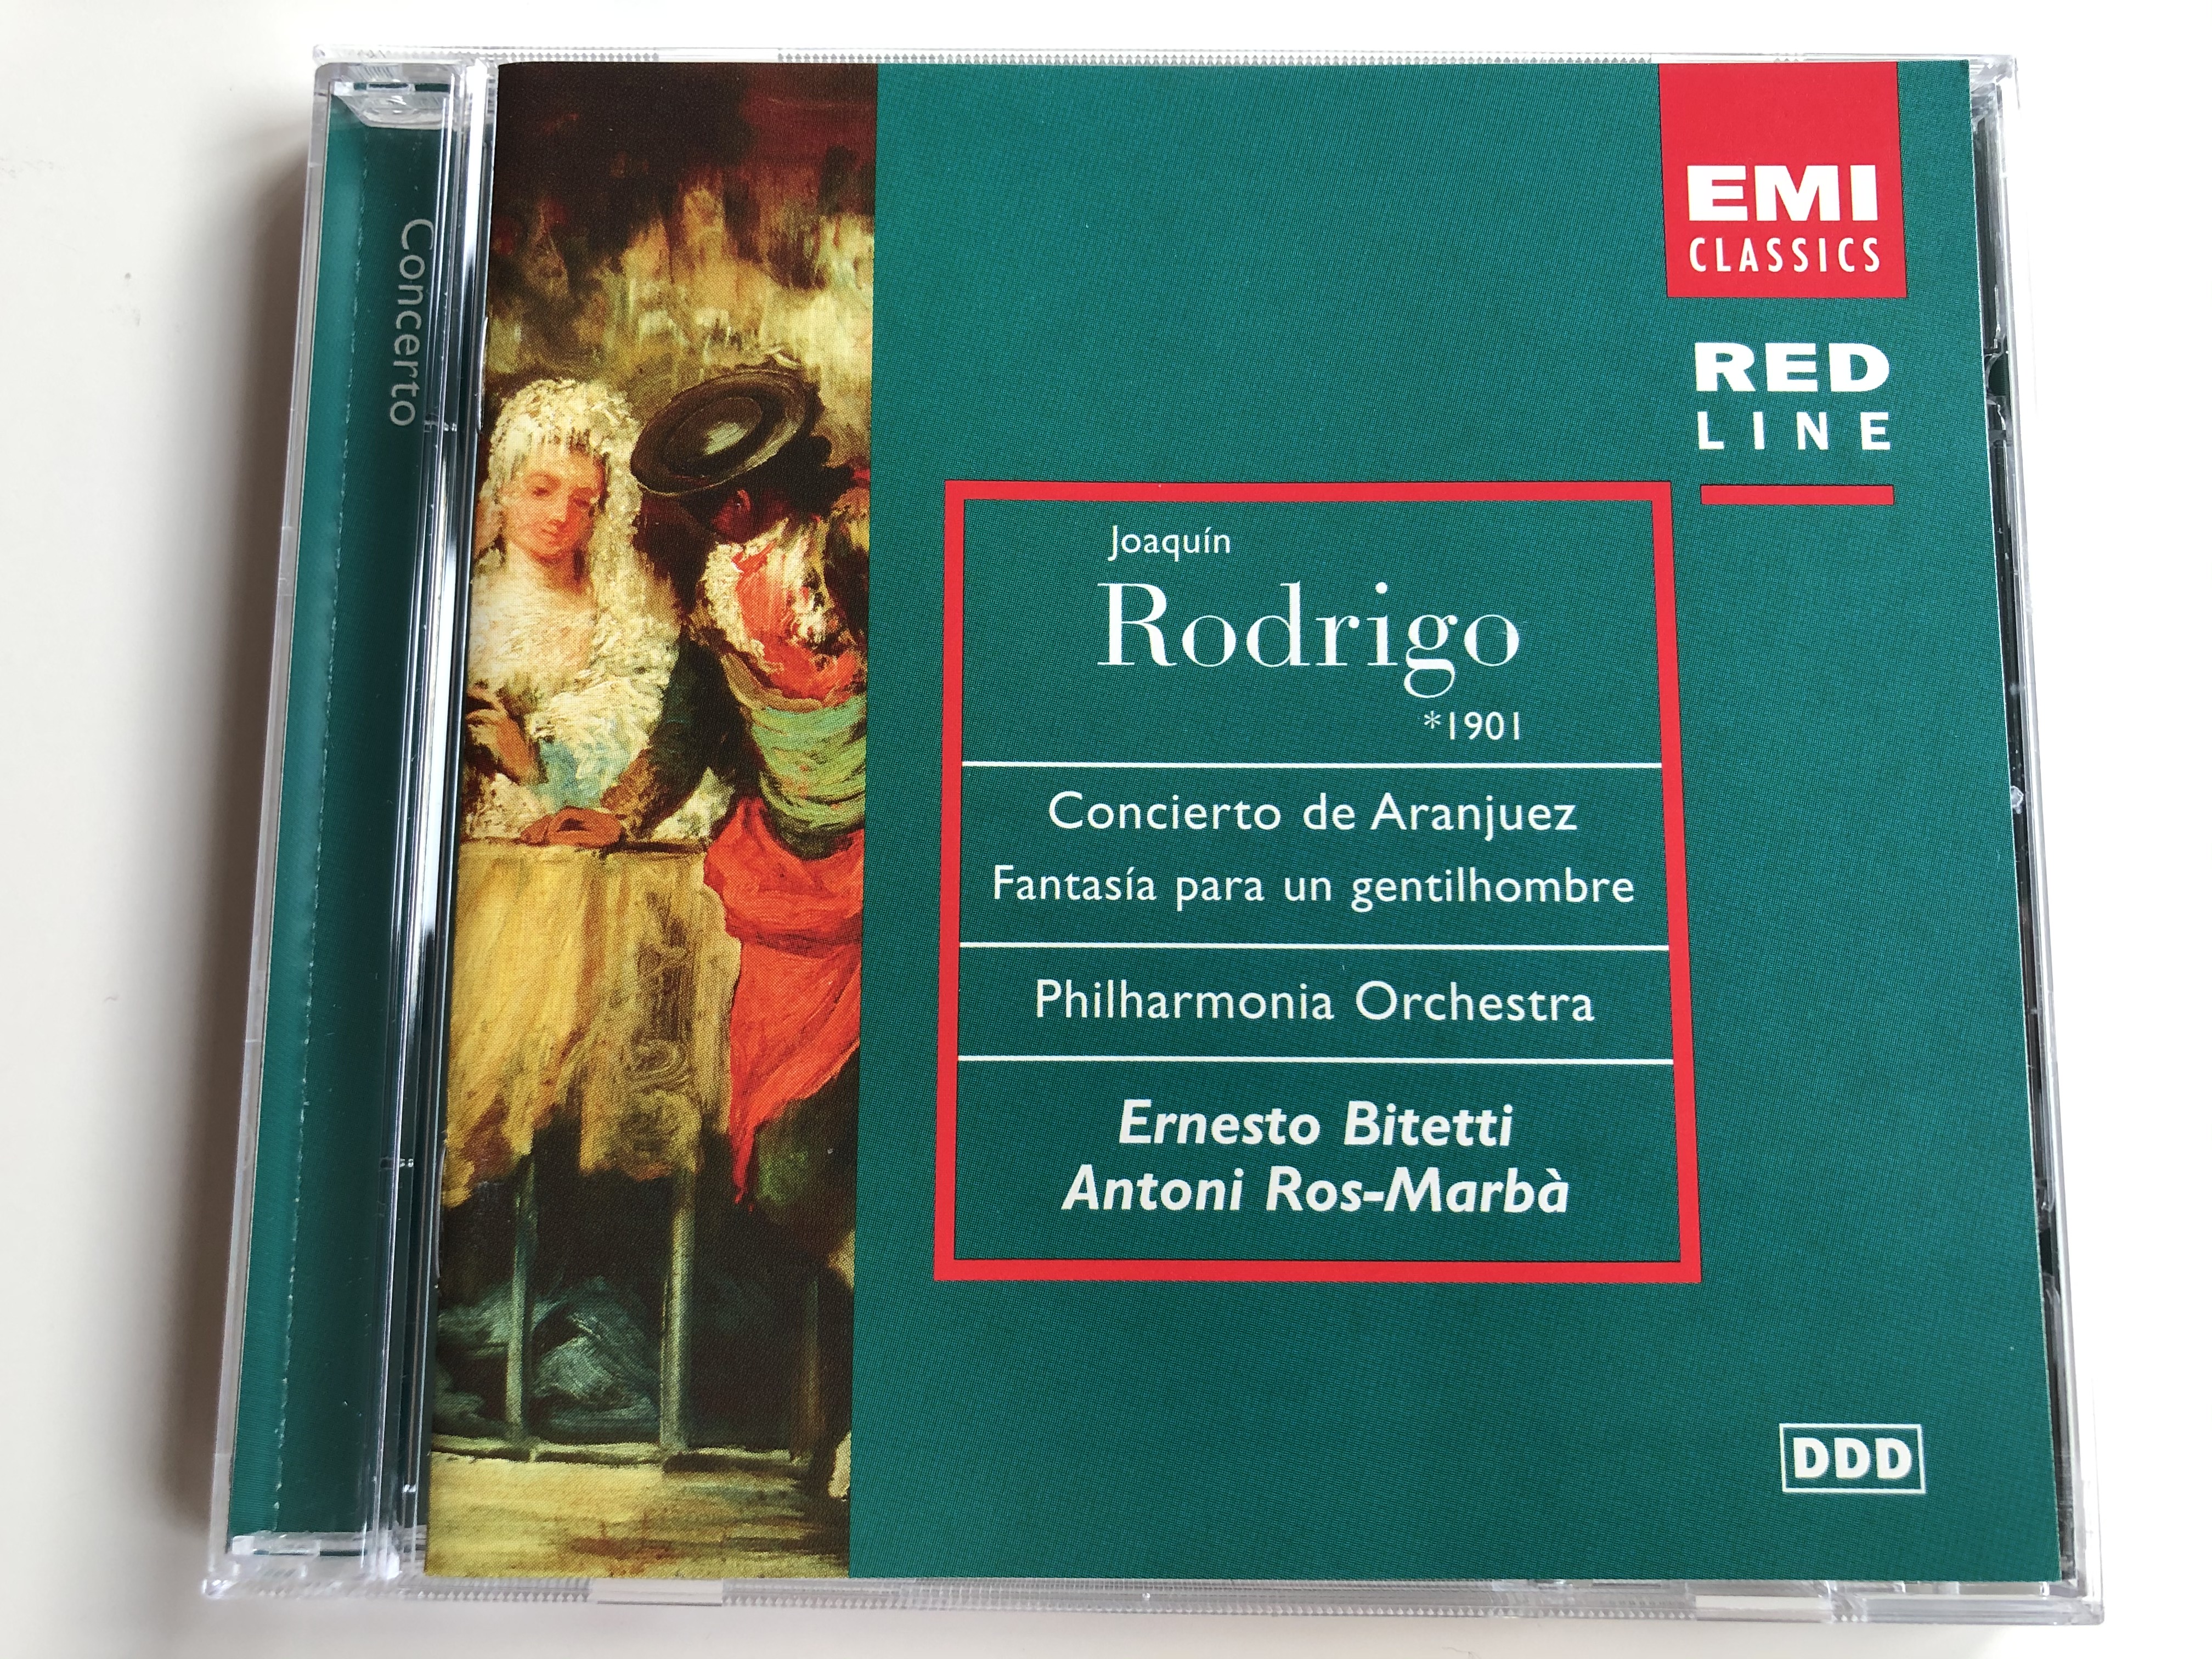 joaquin-rodrigo-1901-concierto-de-aranjuez-fantasia-para-un-gentilhombre-philharmonia-orchestra-ernesto-bitetti-antoni-ros-marba-emi-classics-audio-cd-1997-stereo-7243-5-69832-2-9.jpg